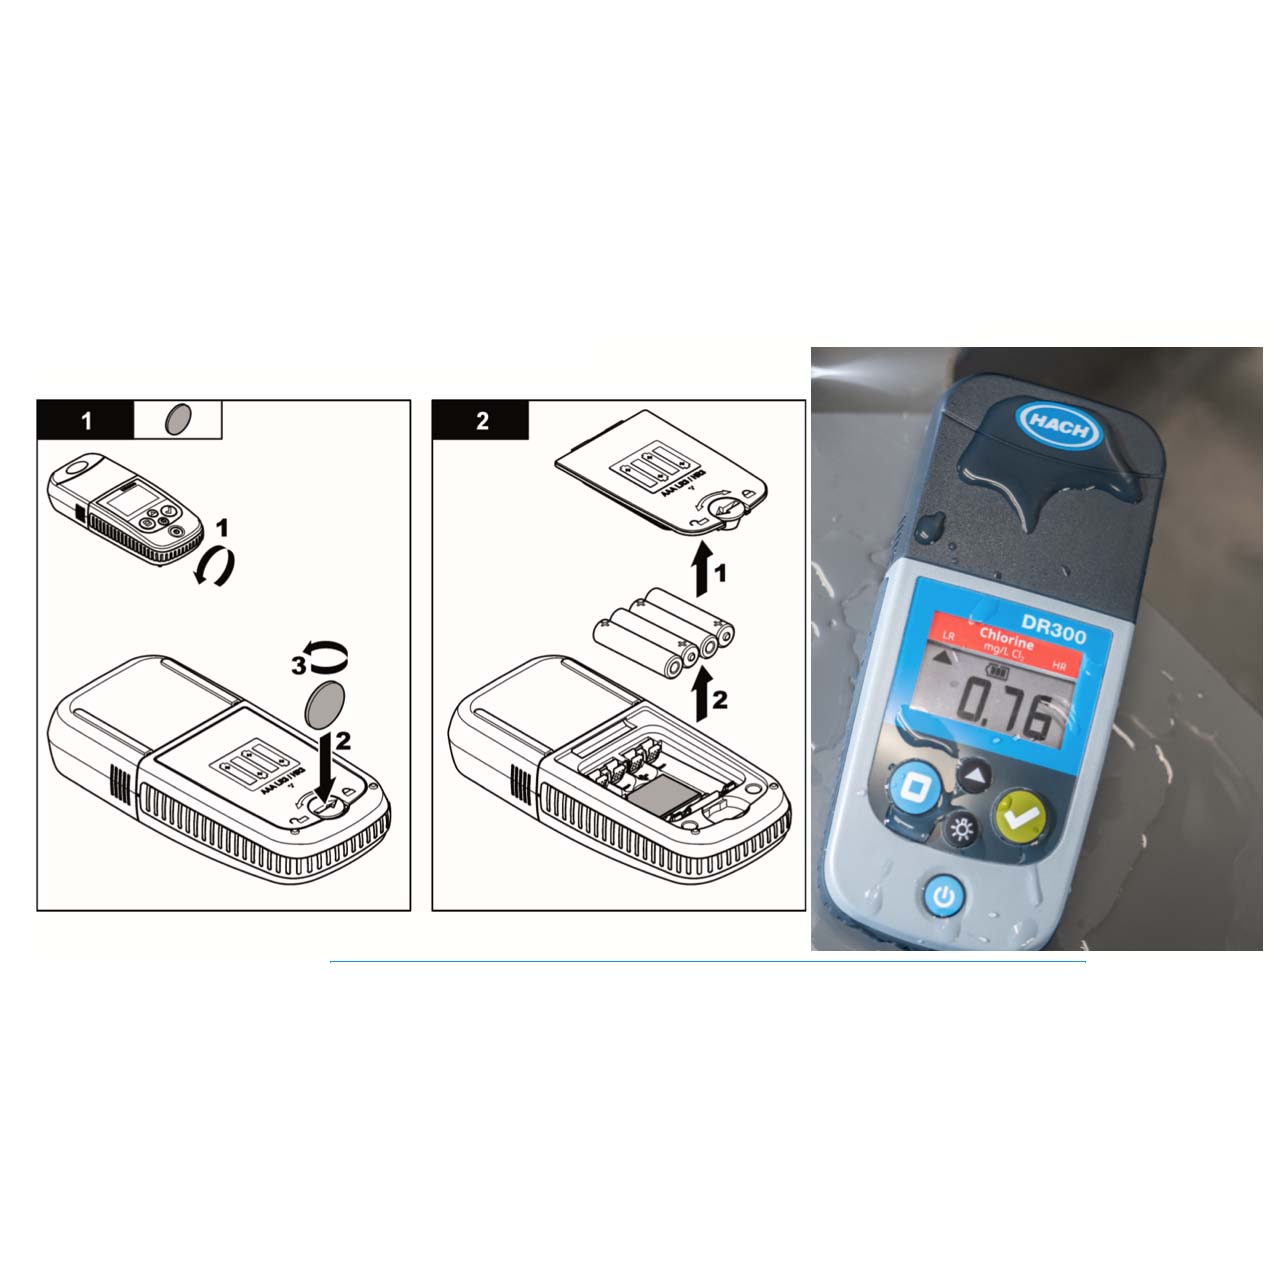 DR300 Pocket Colorimeter HACH | Colorímetro portátil para calidad de aguas